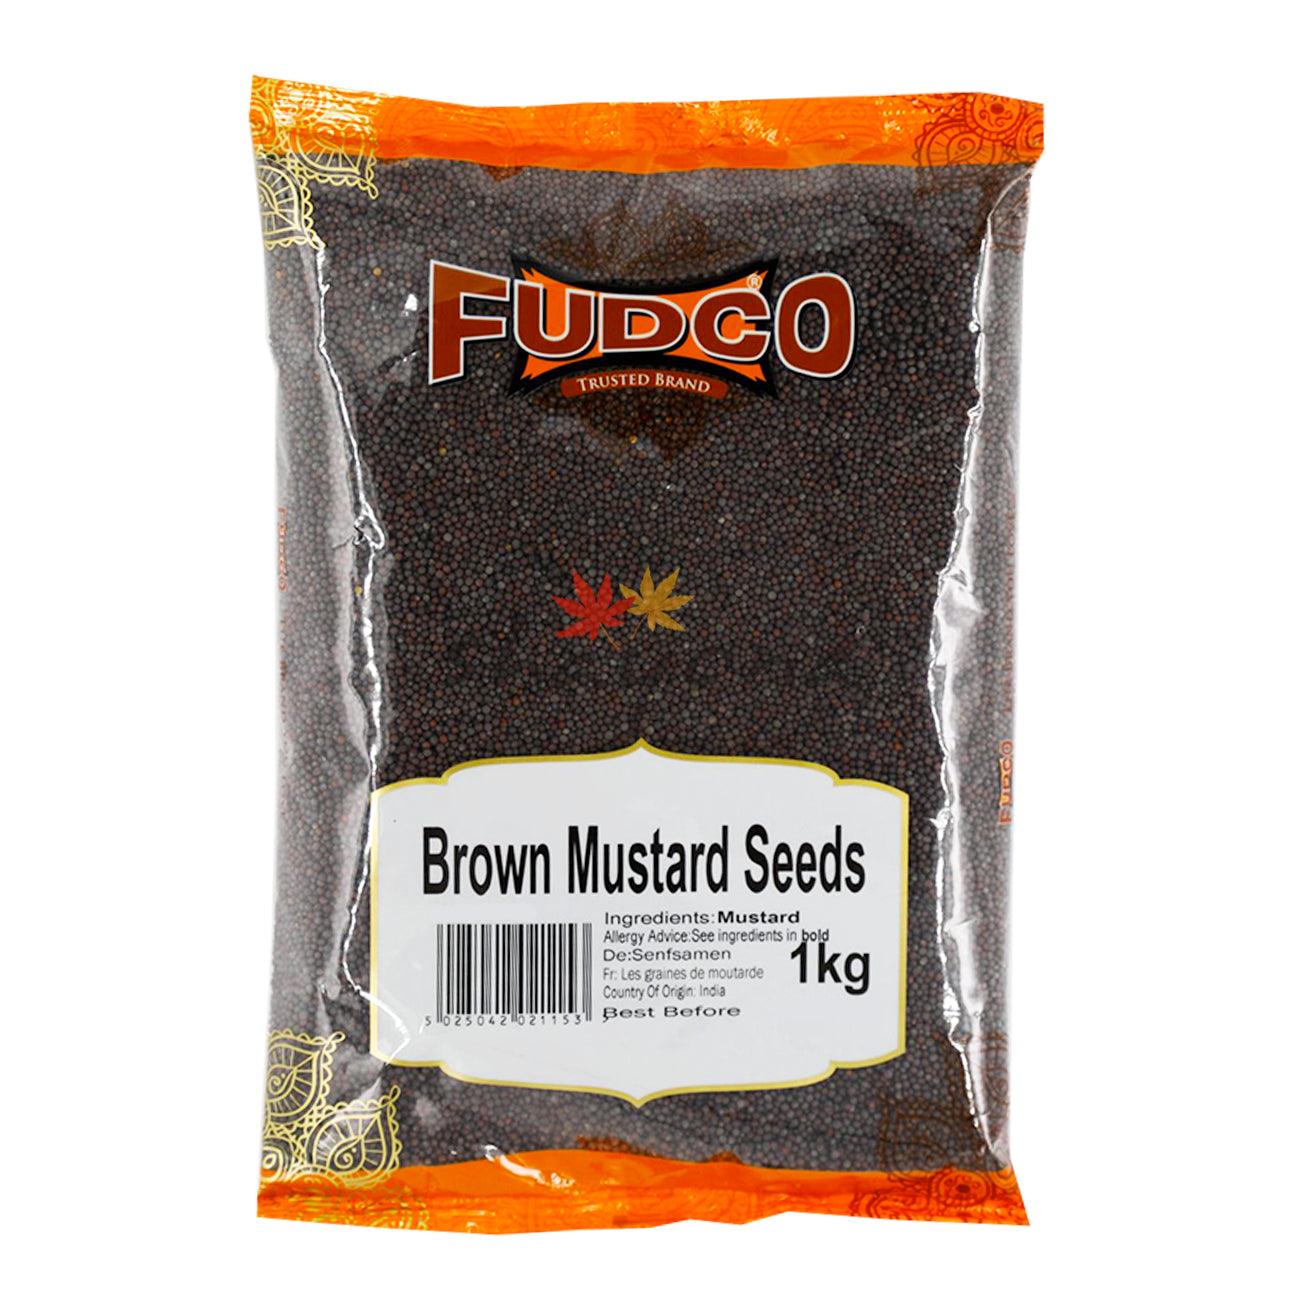 Fudco Brown Mustard Seeds - Shayona UK